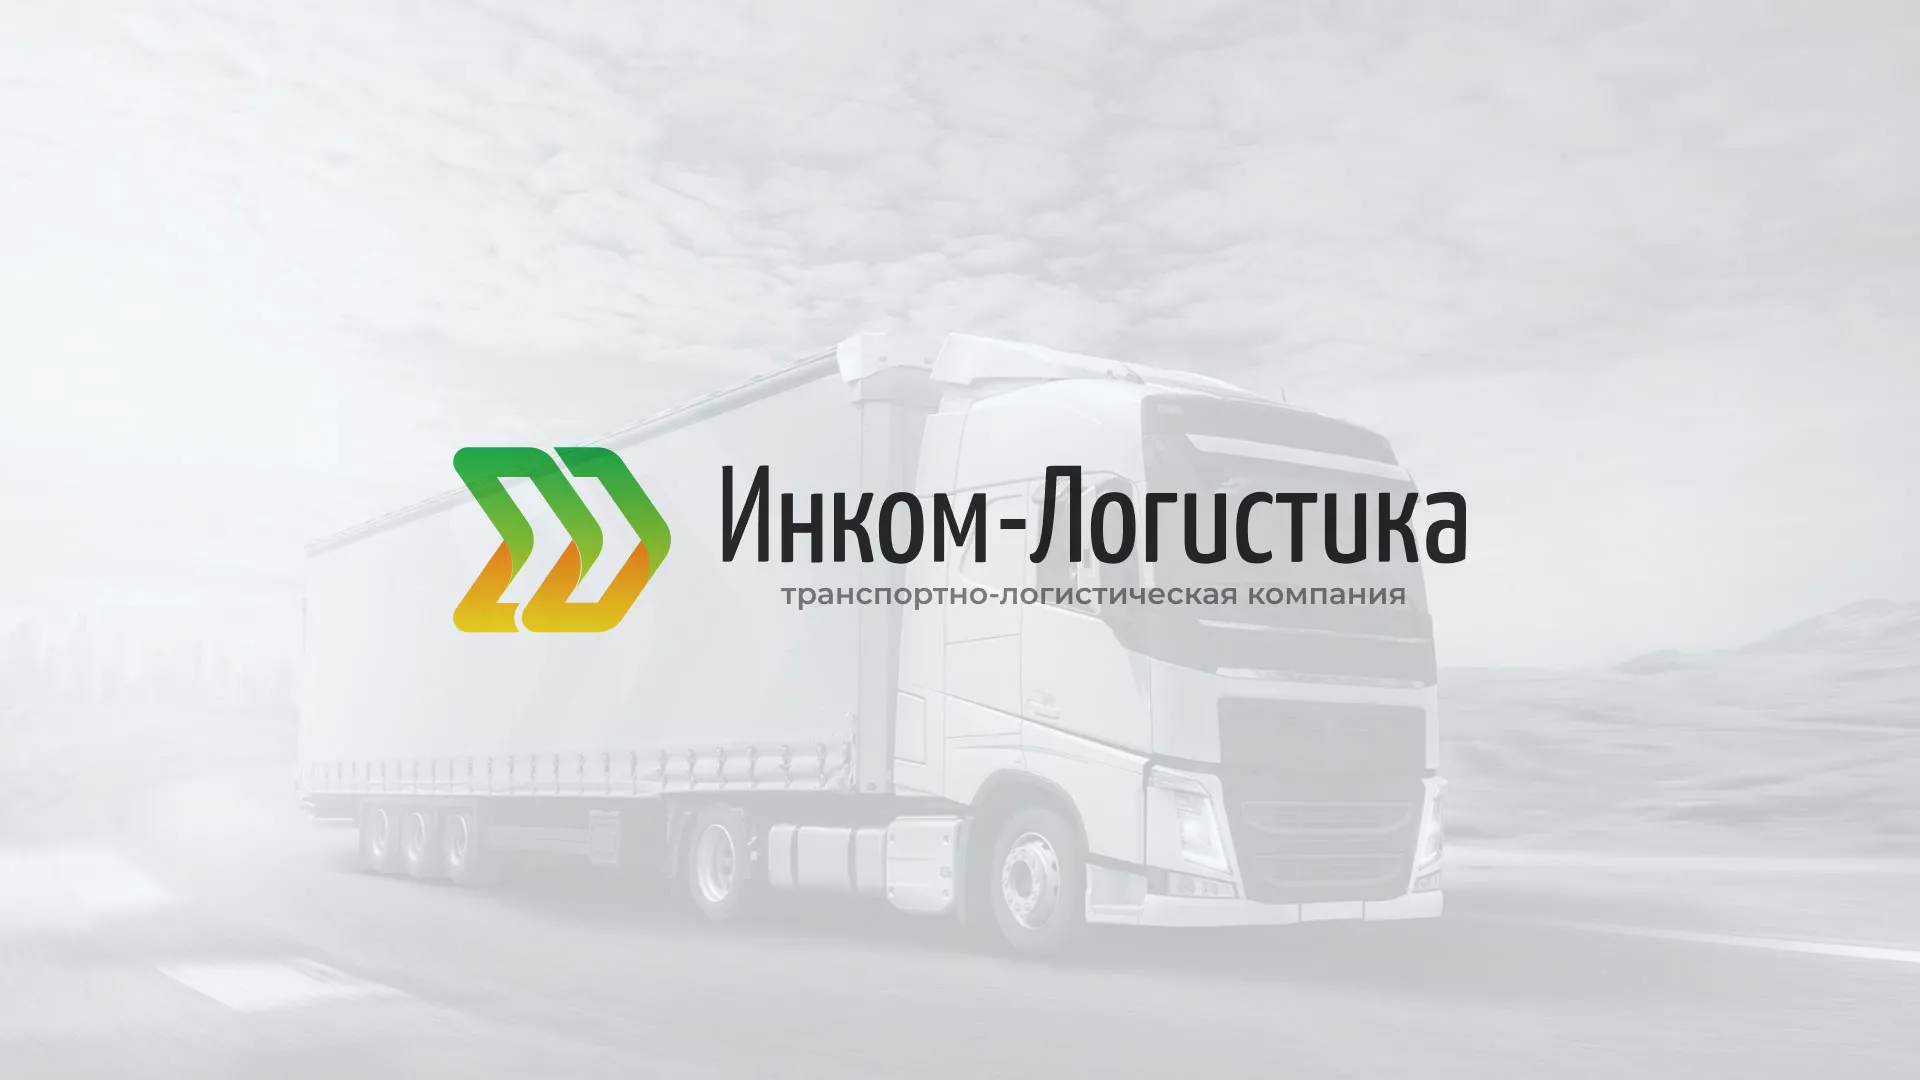 Разработка логотипа и сайта компании «Инком-Логистика» в Рыбном